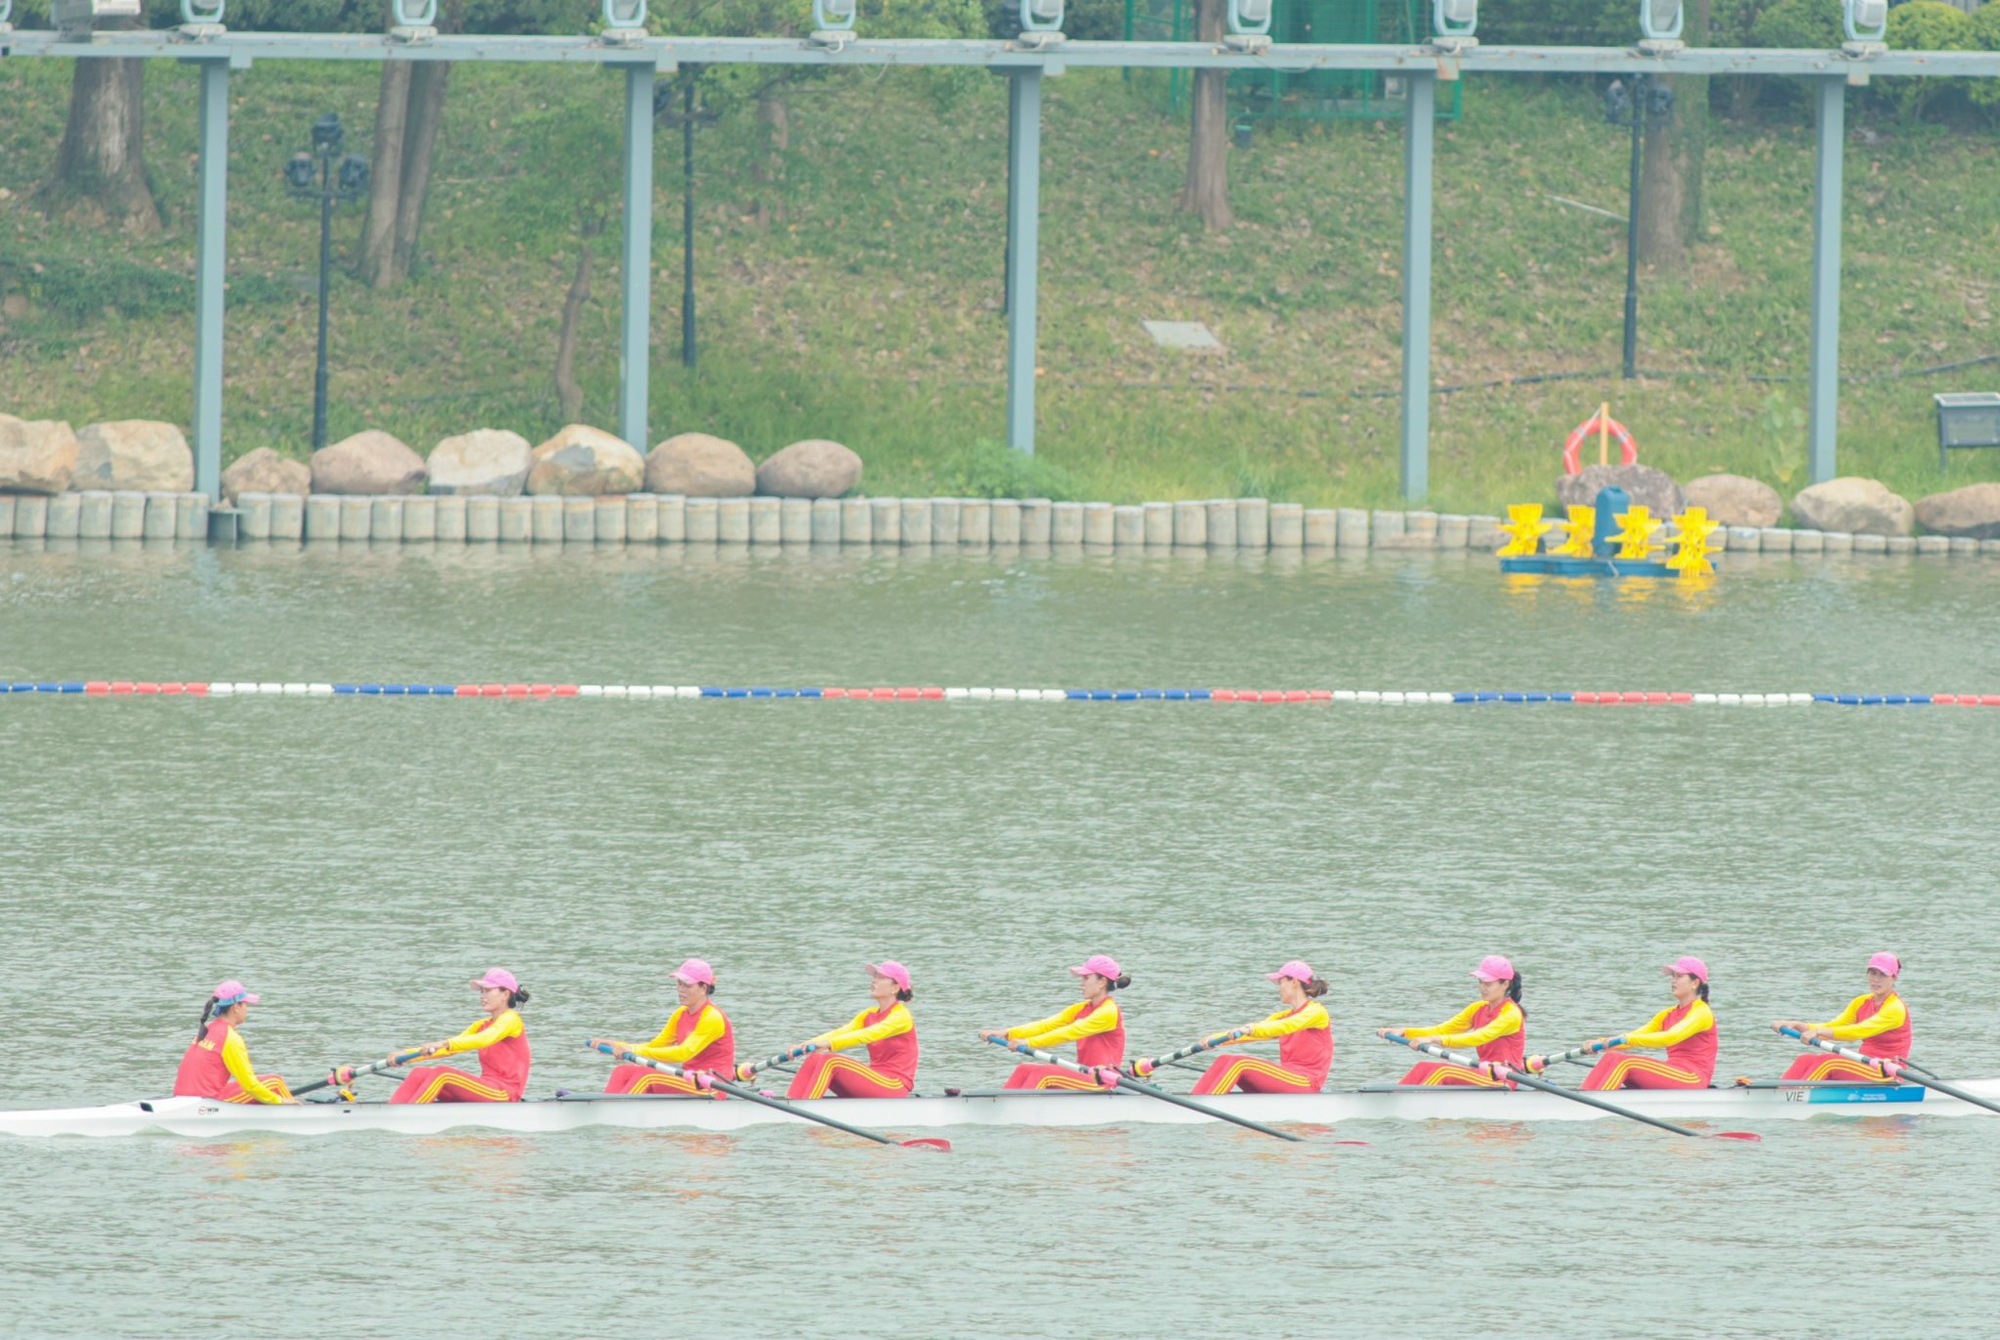 ASIAD 19: Rowing xuất sắc giành thêm 2 HCĐ, đoàn Việt Nam đã có 4 huy chương - Ảnh 5.